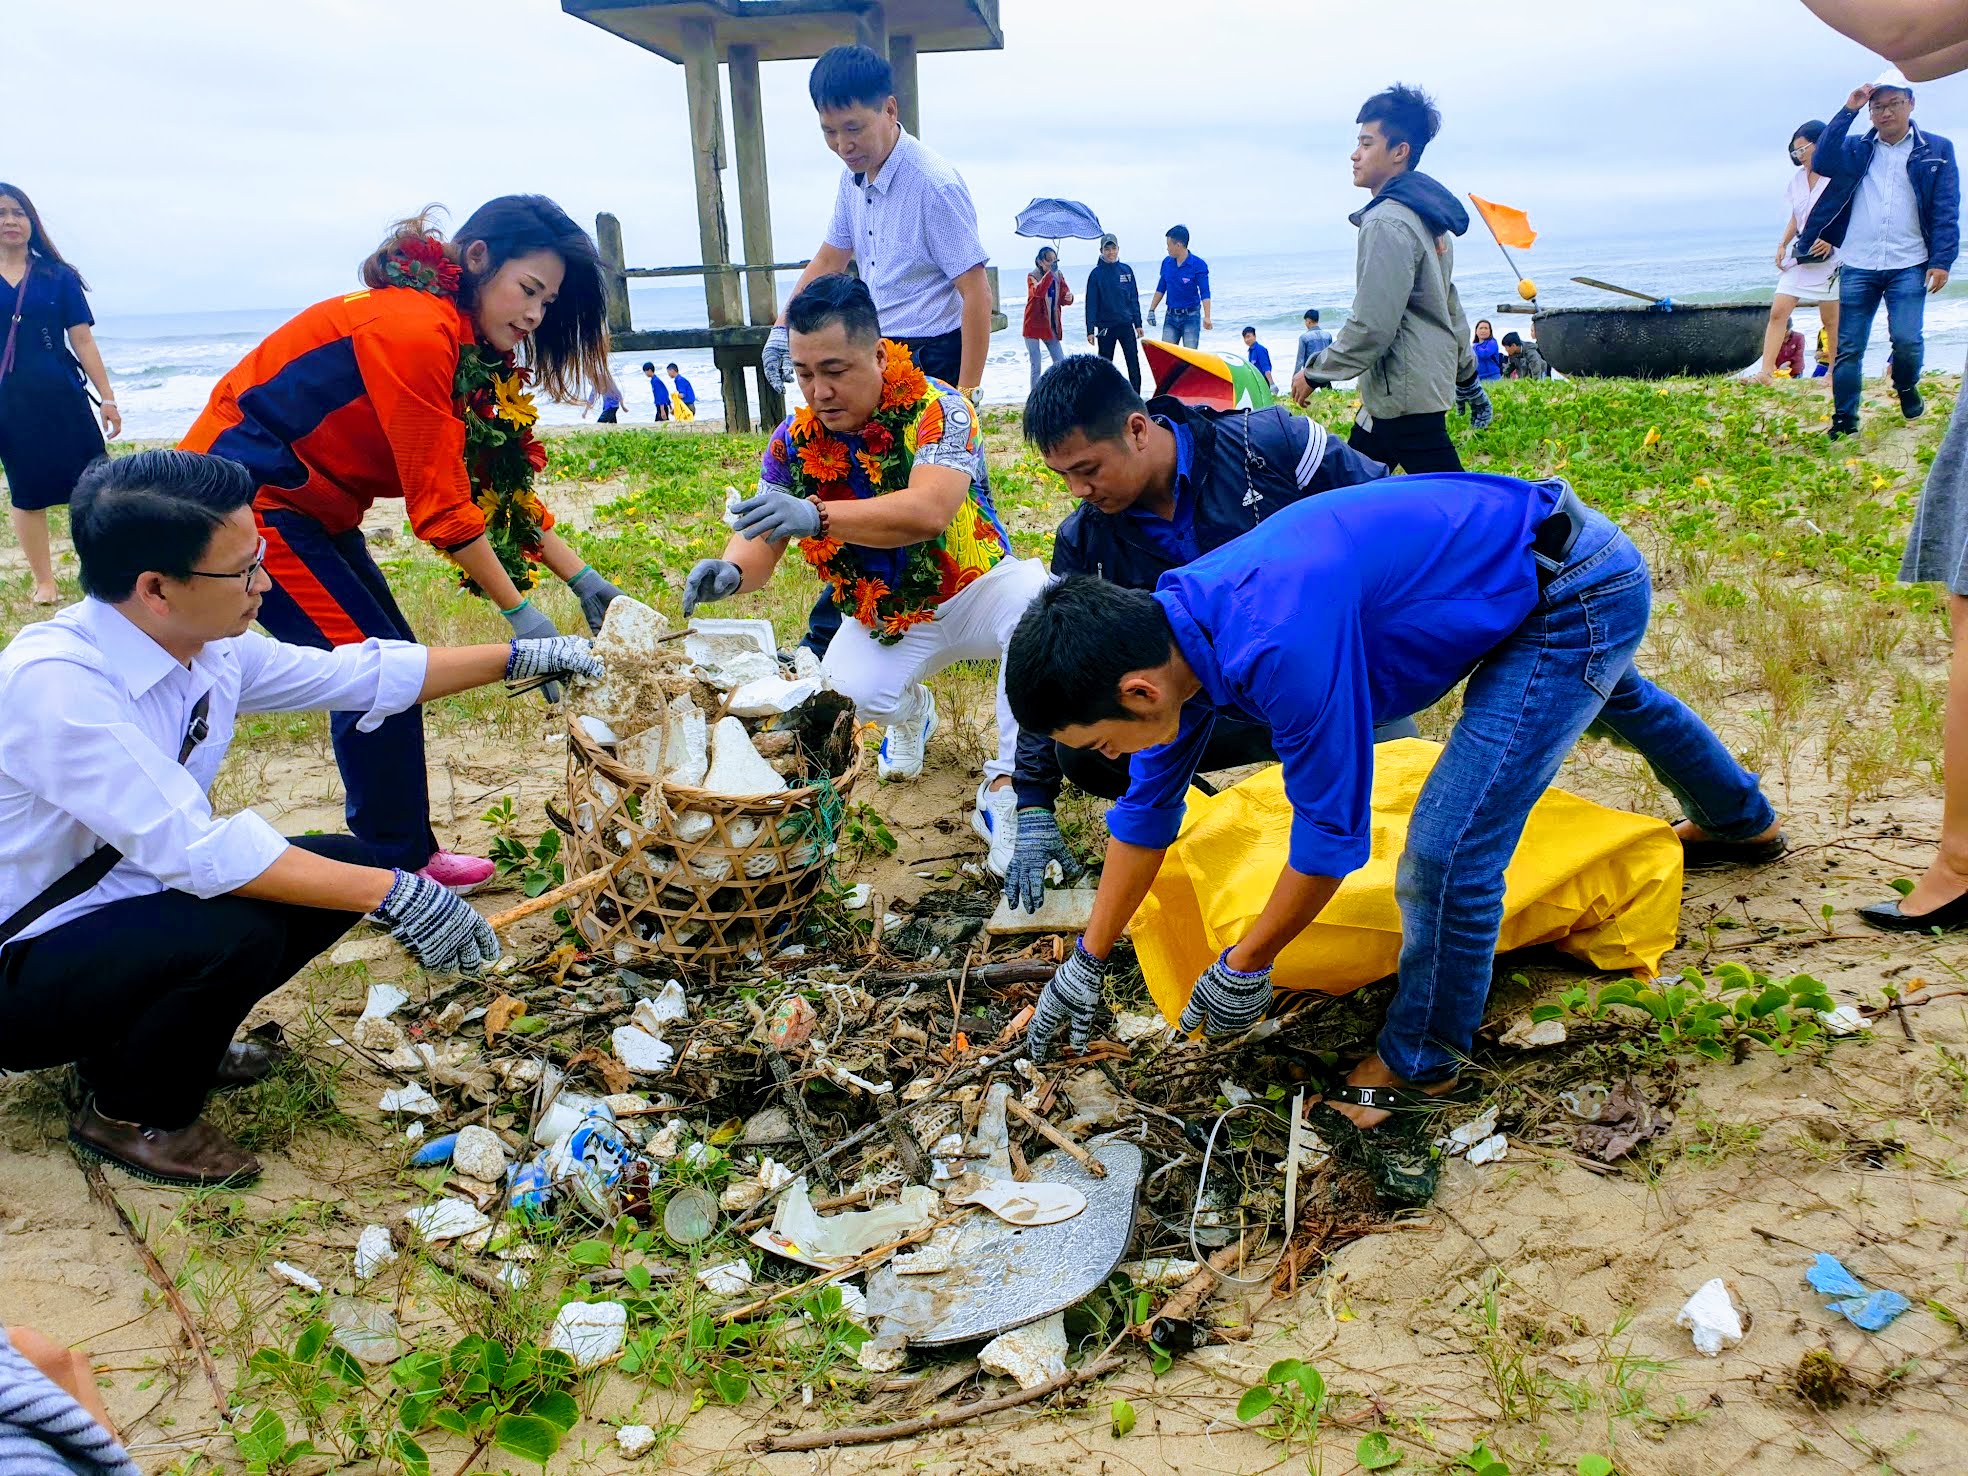 Ngôi sao - Diễn viên Lý Hùng cùng người dân nhặt rác kêu gọi bảo vệ môi trường